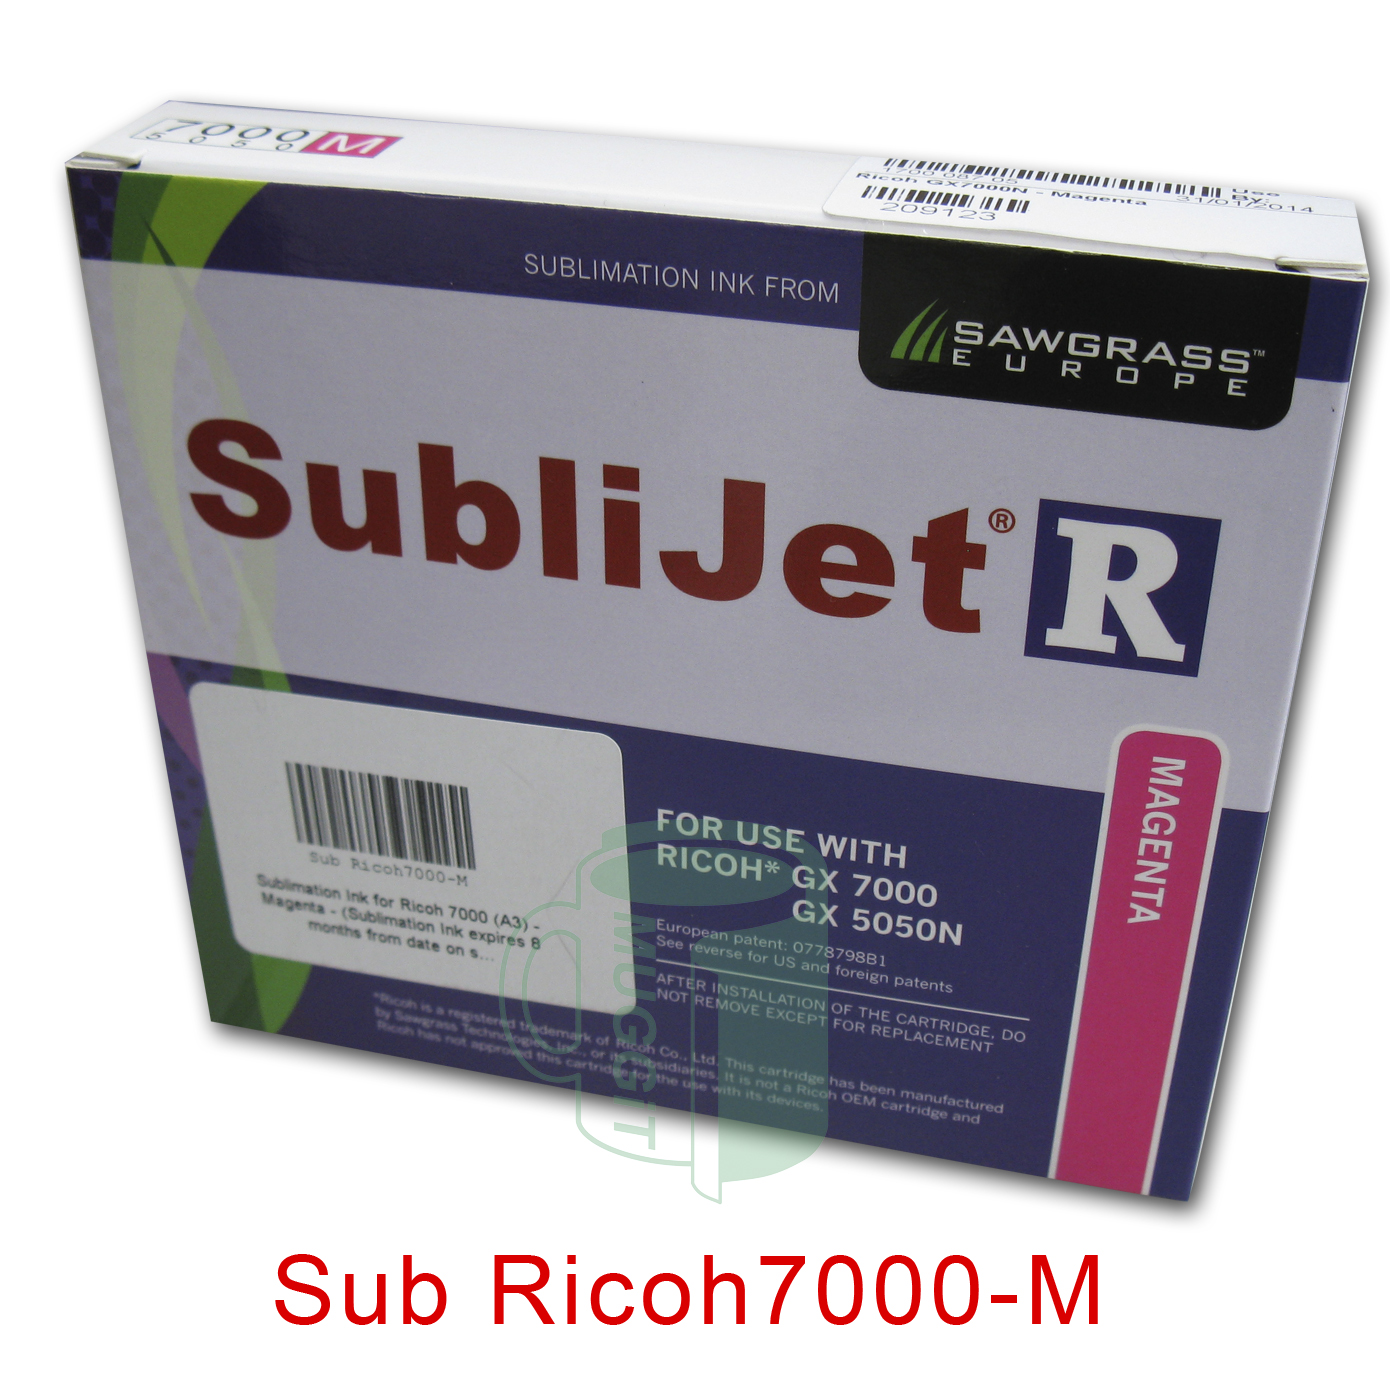 Sub Ricoh7000-M